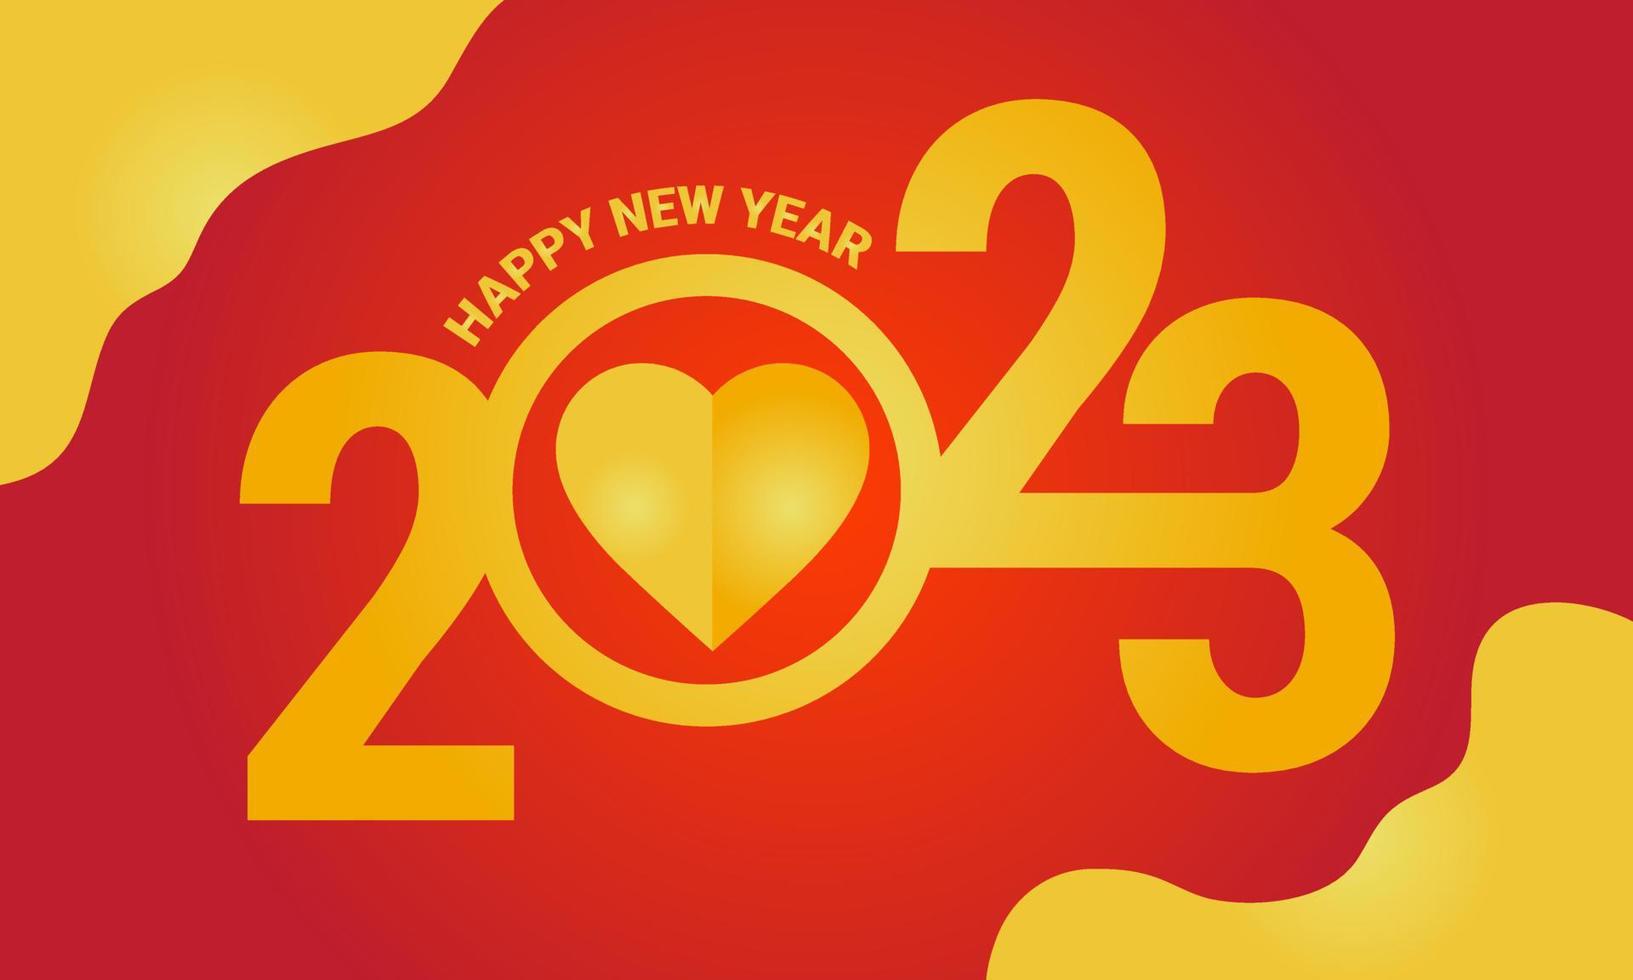 2023 amor feliz año nuevo 2023 logo tipografía diseño dorado moderno hermosa tarjeta de felicitación degradado fondo rojo. ilustración vectorial eps10 vector